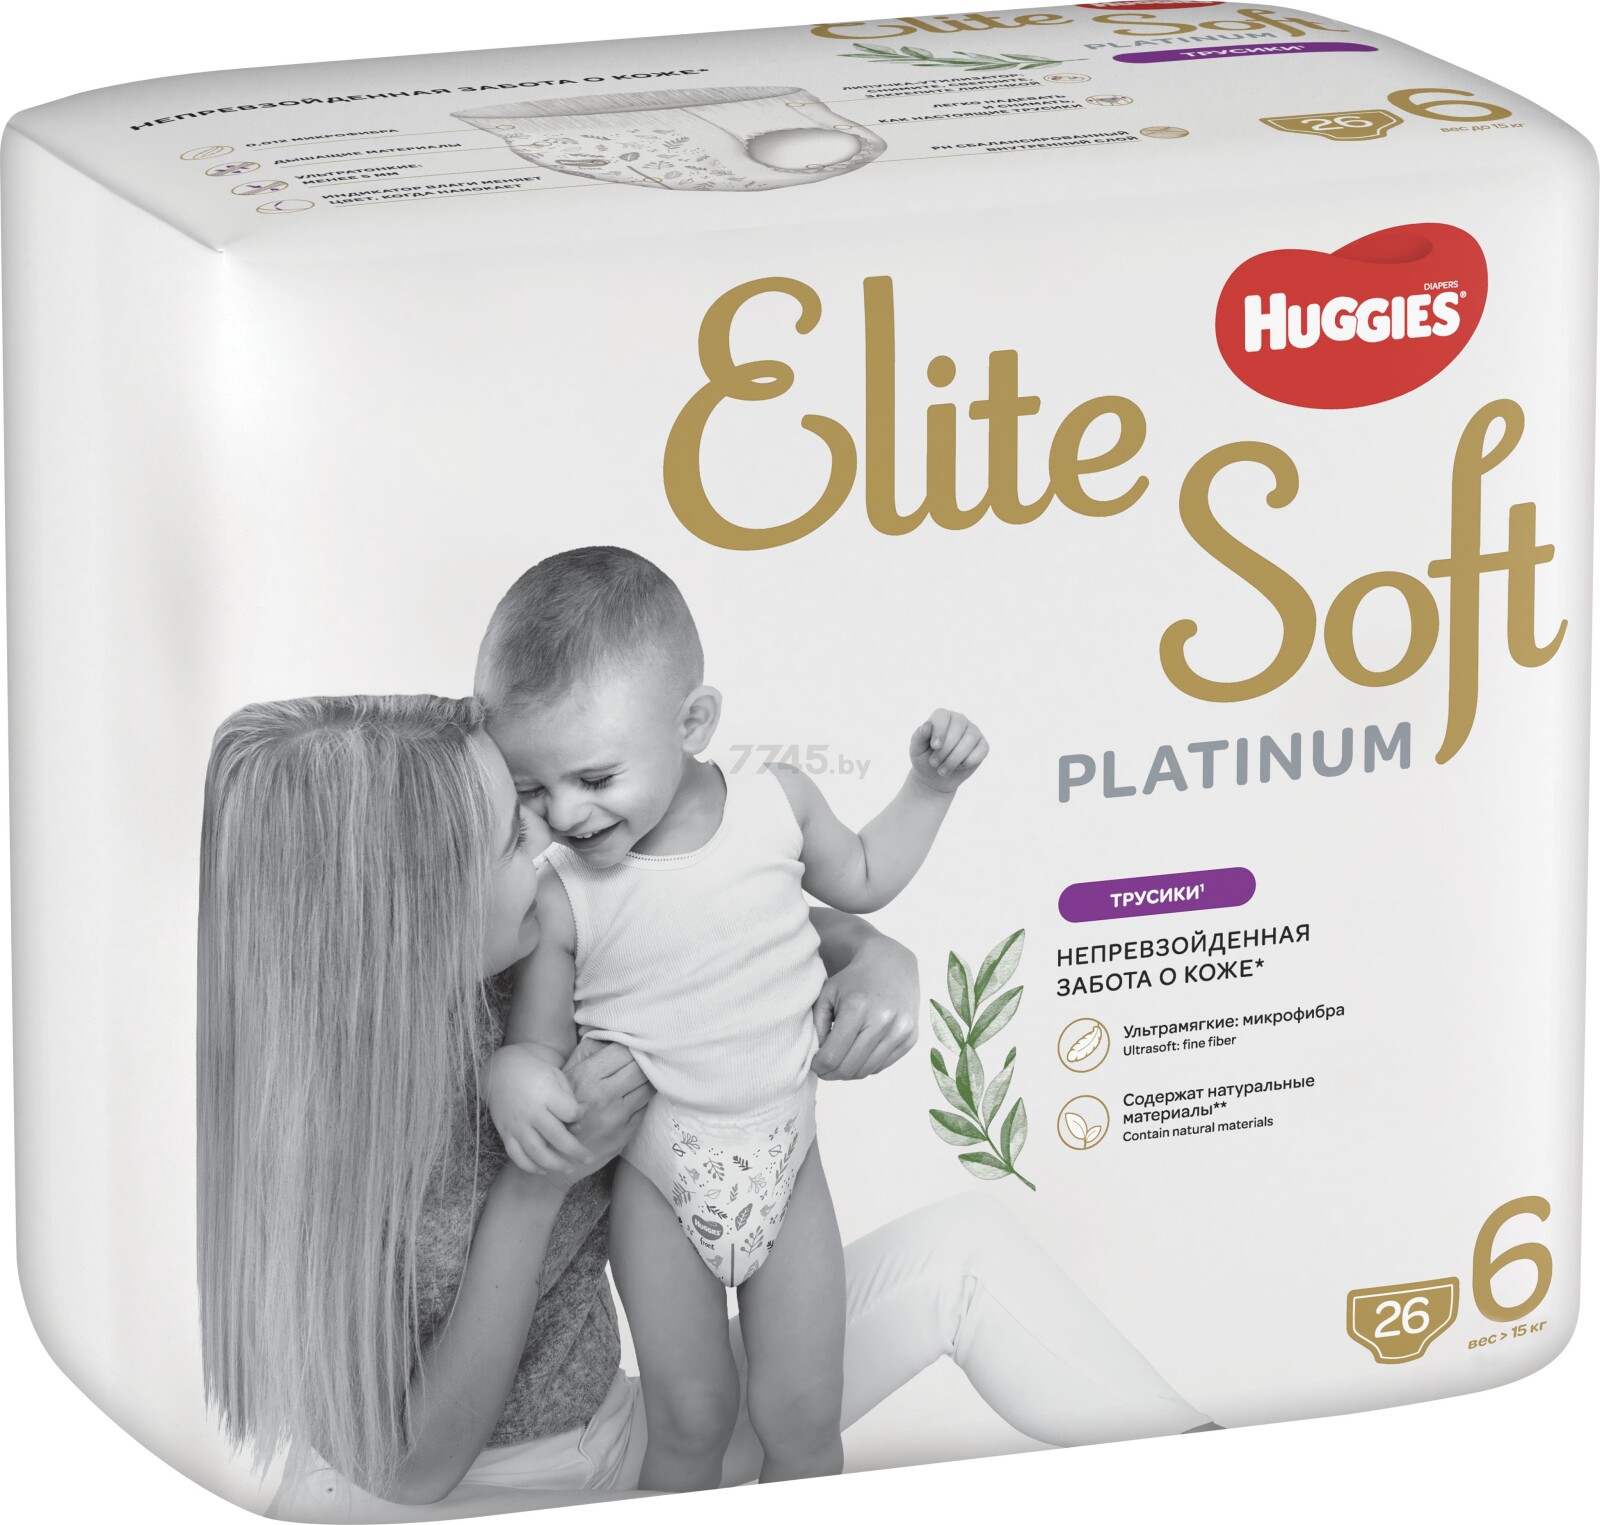 Подгузники-трусики HUGGIES Elite Soft Platinum Mega 6 Extra Large от 15 кг 26 штук (5029053548845) - Фото 2